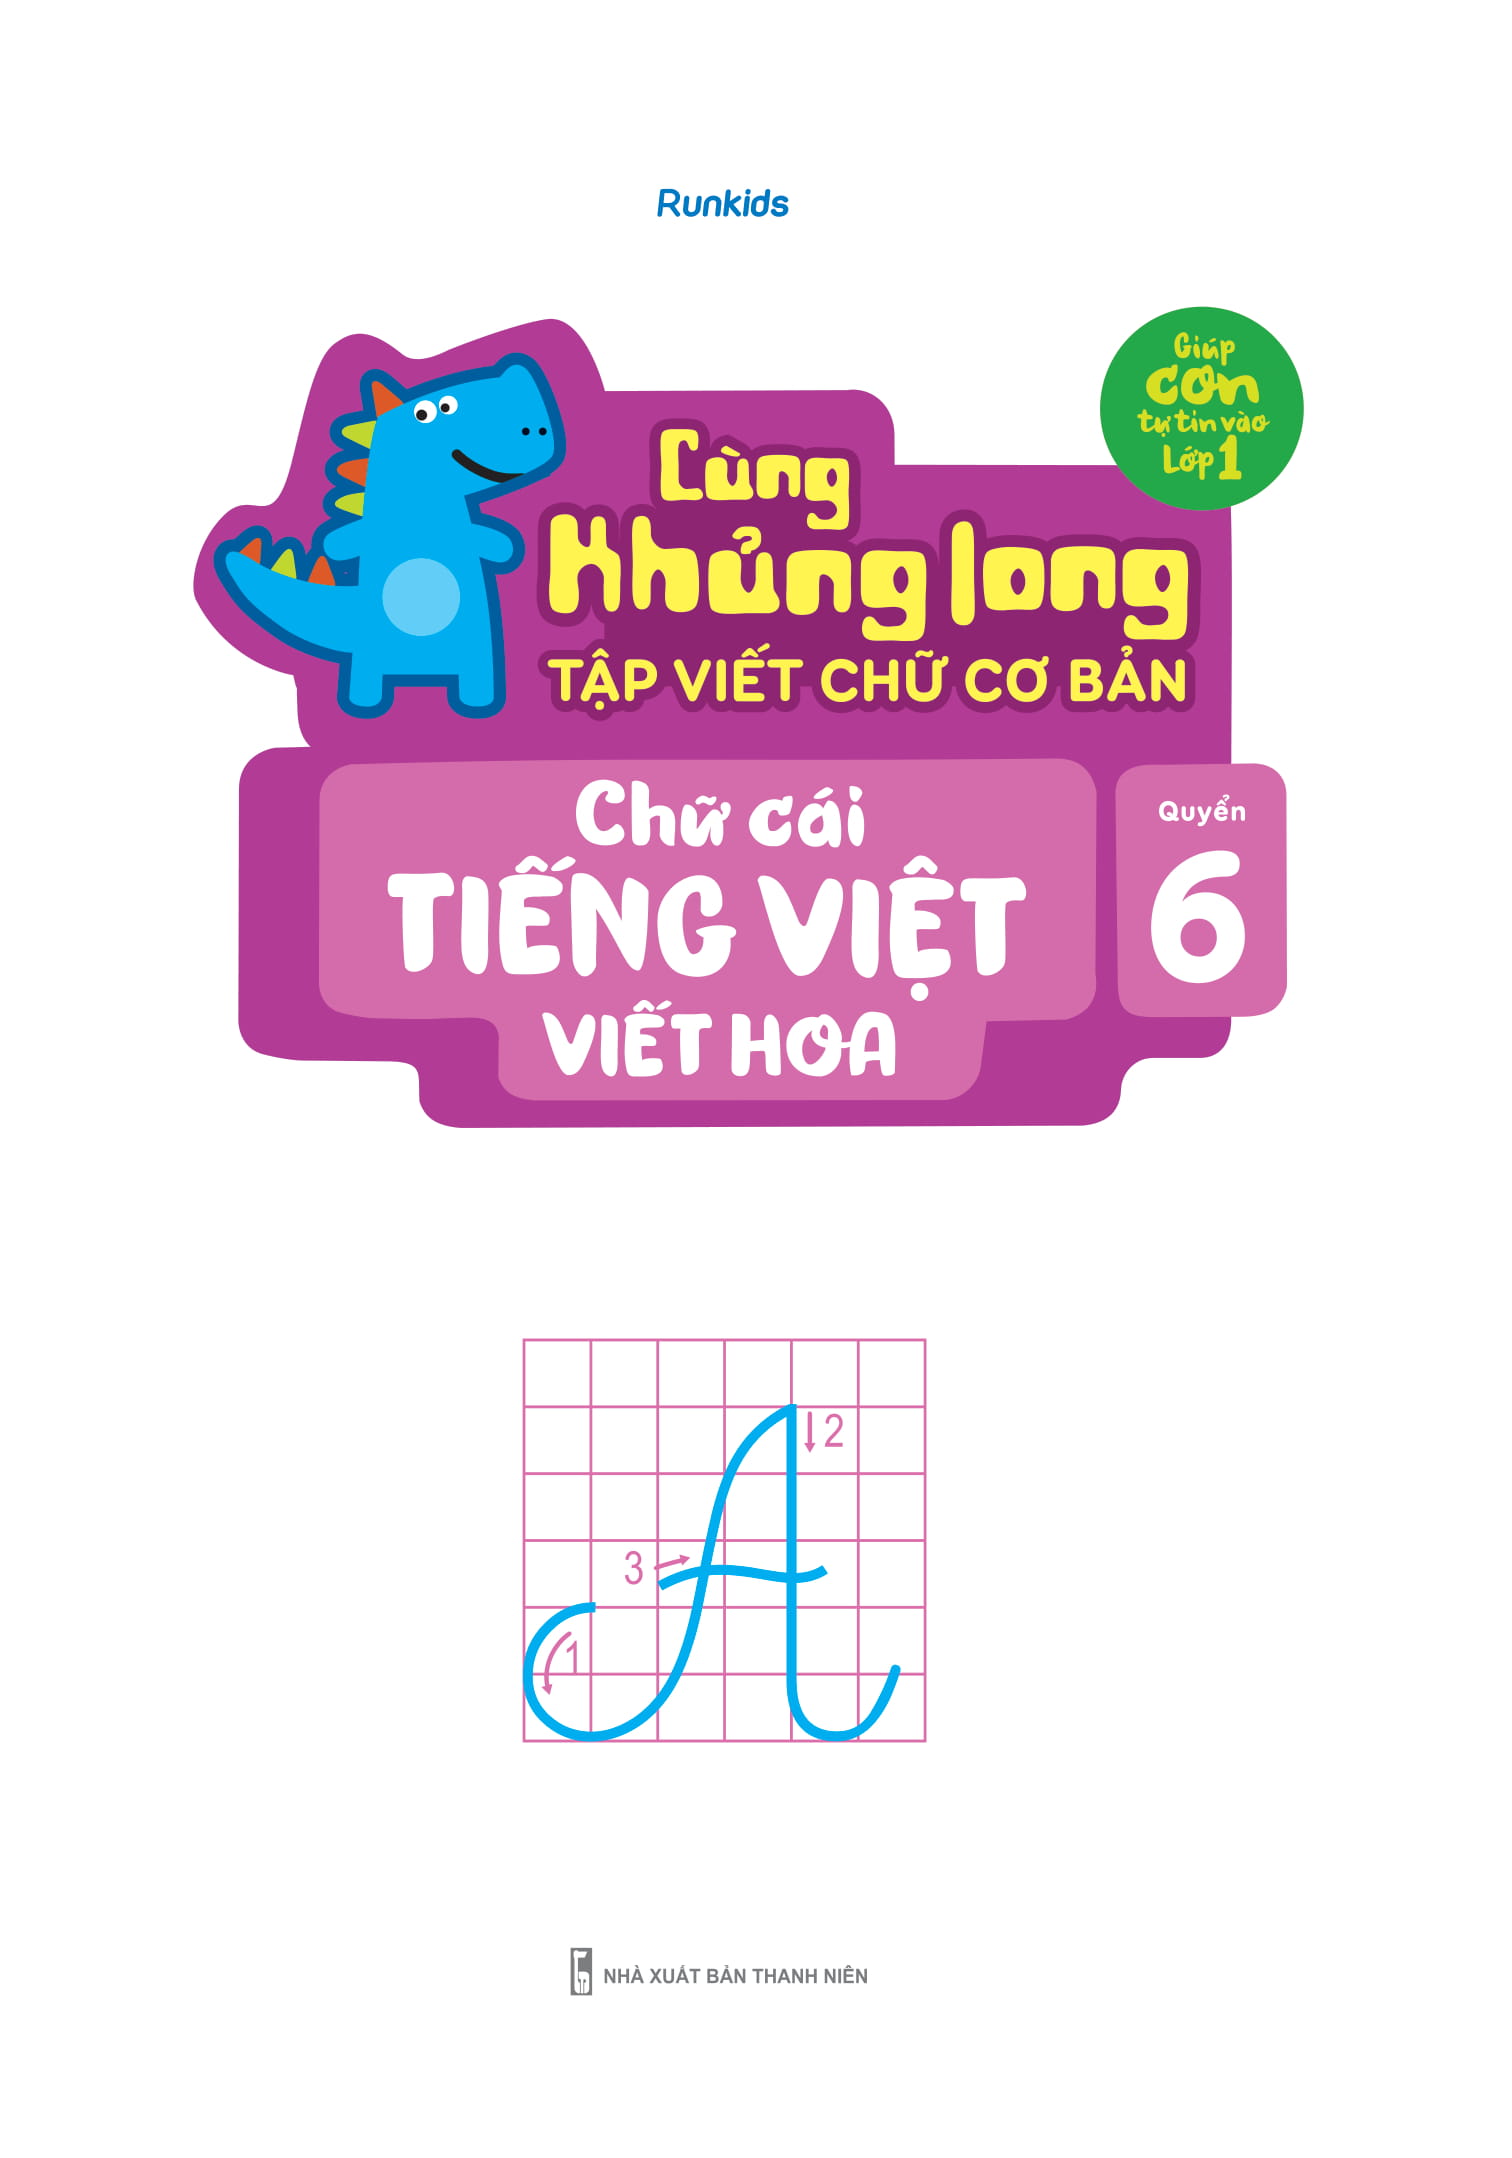 Sách - Cùng Khủng Long Tập Viết Chữ Cơ Bản - Chữ Cái Tiếng Việt Viết Hoa - Quyển 6 (Sticker Bé Trai)